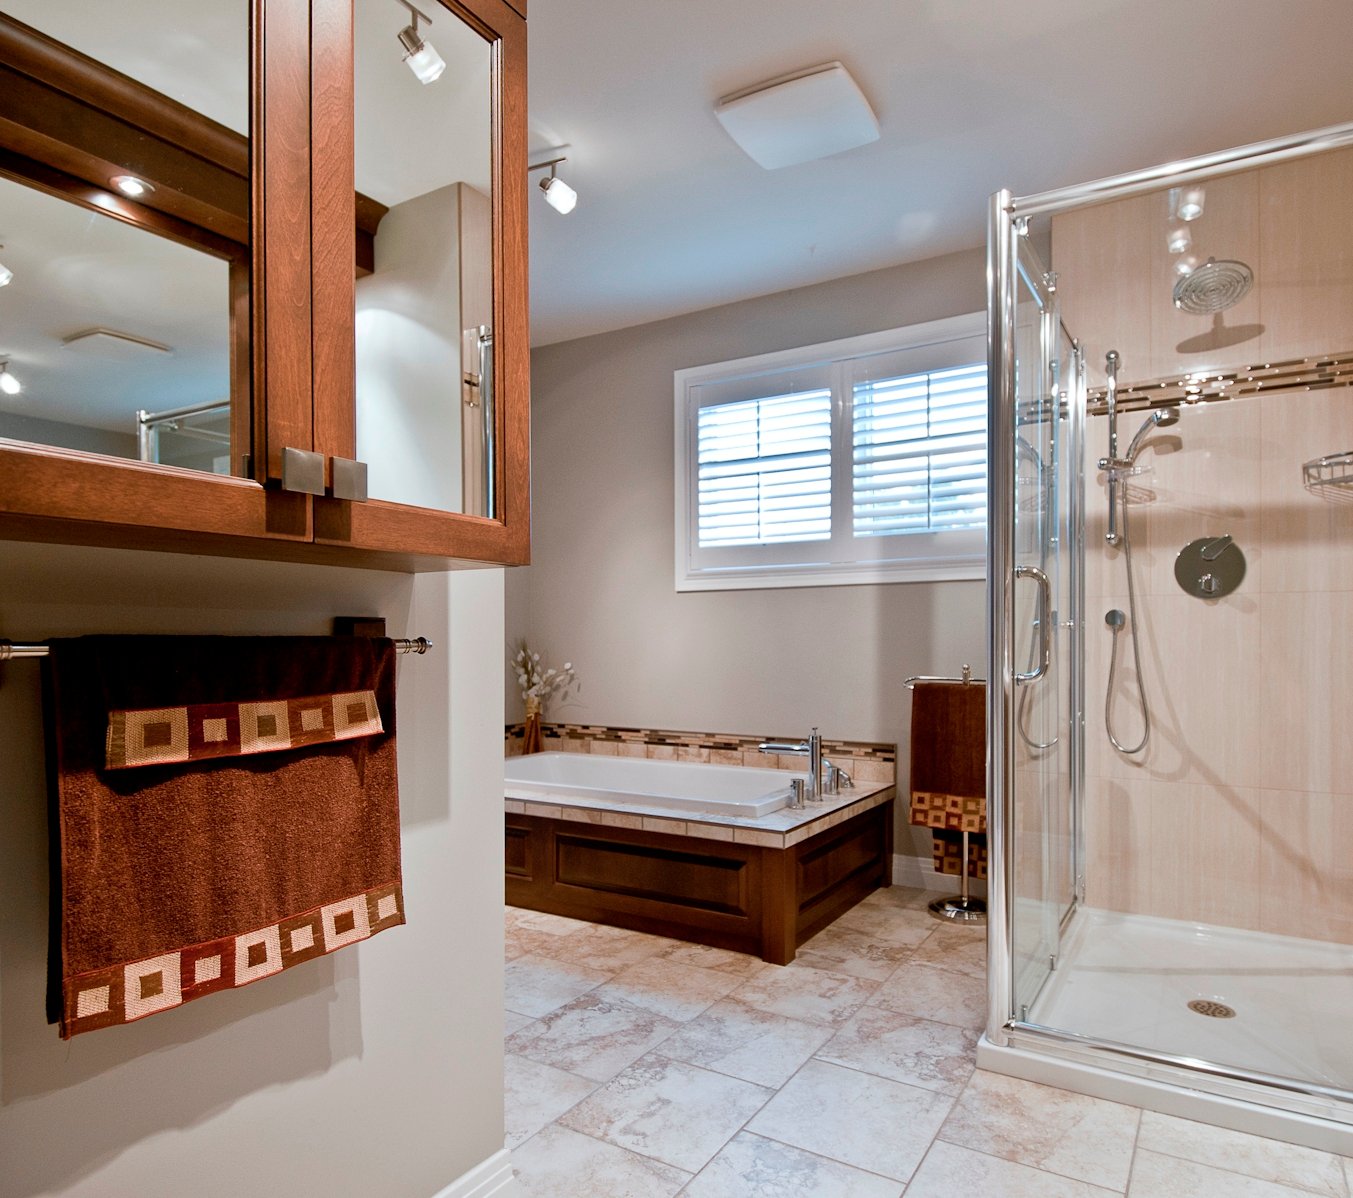 eclectic-bathroom-design-ideas-hd-wallpaper-imagexsotic-com-bathroom-photo-bathroom-design-ideas